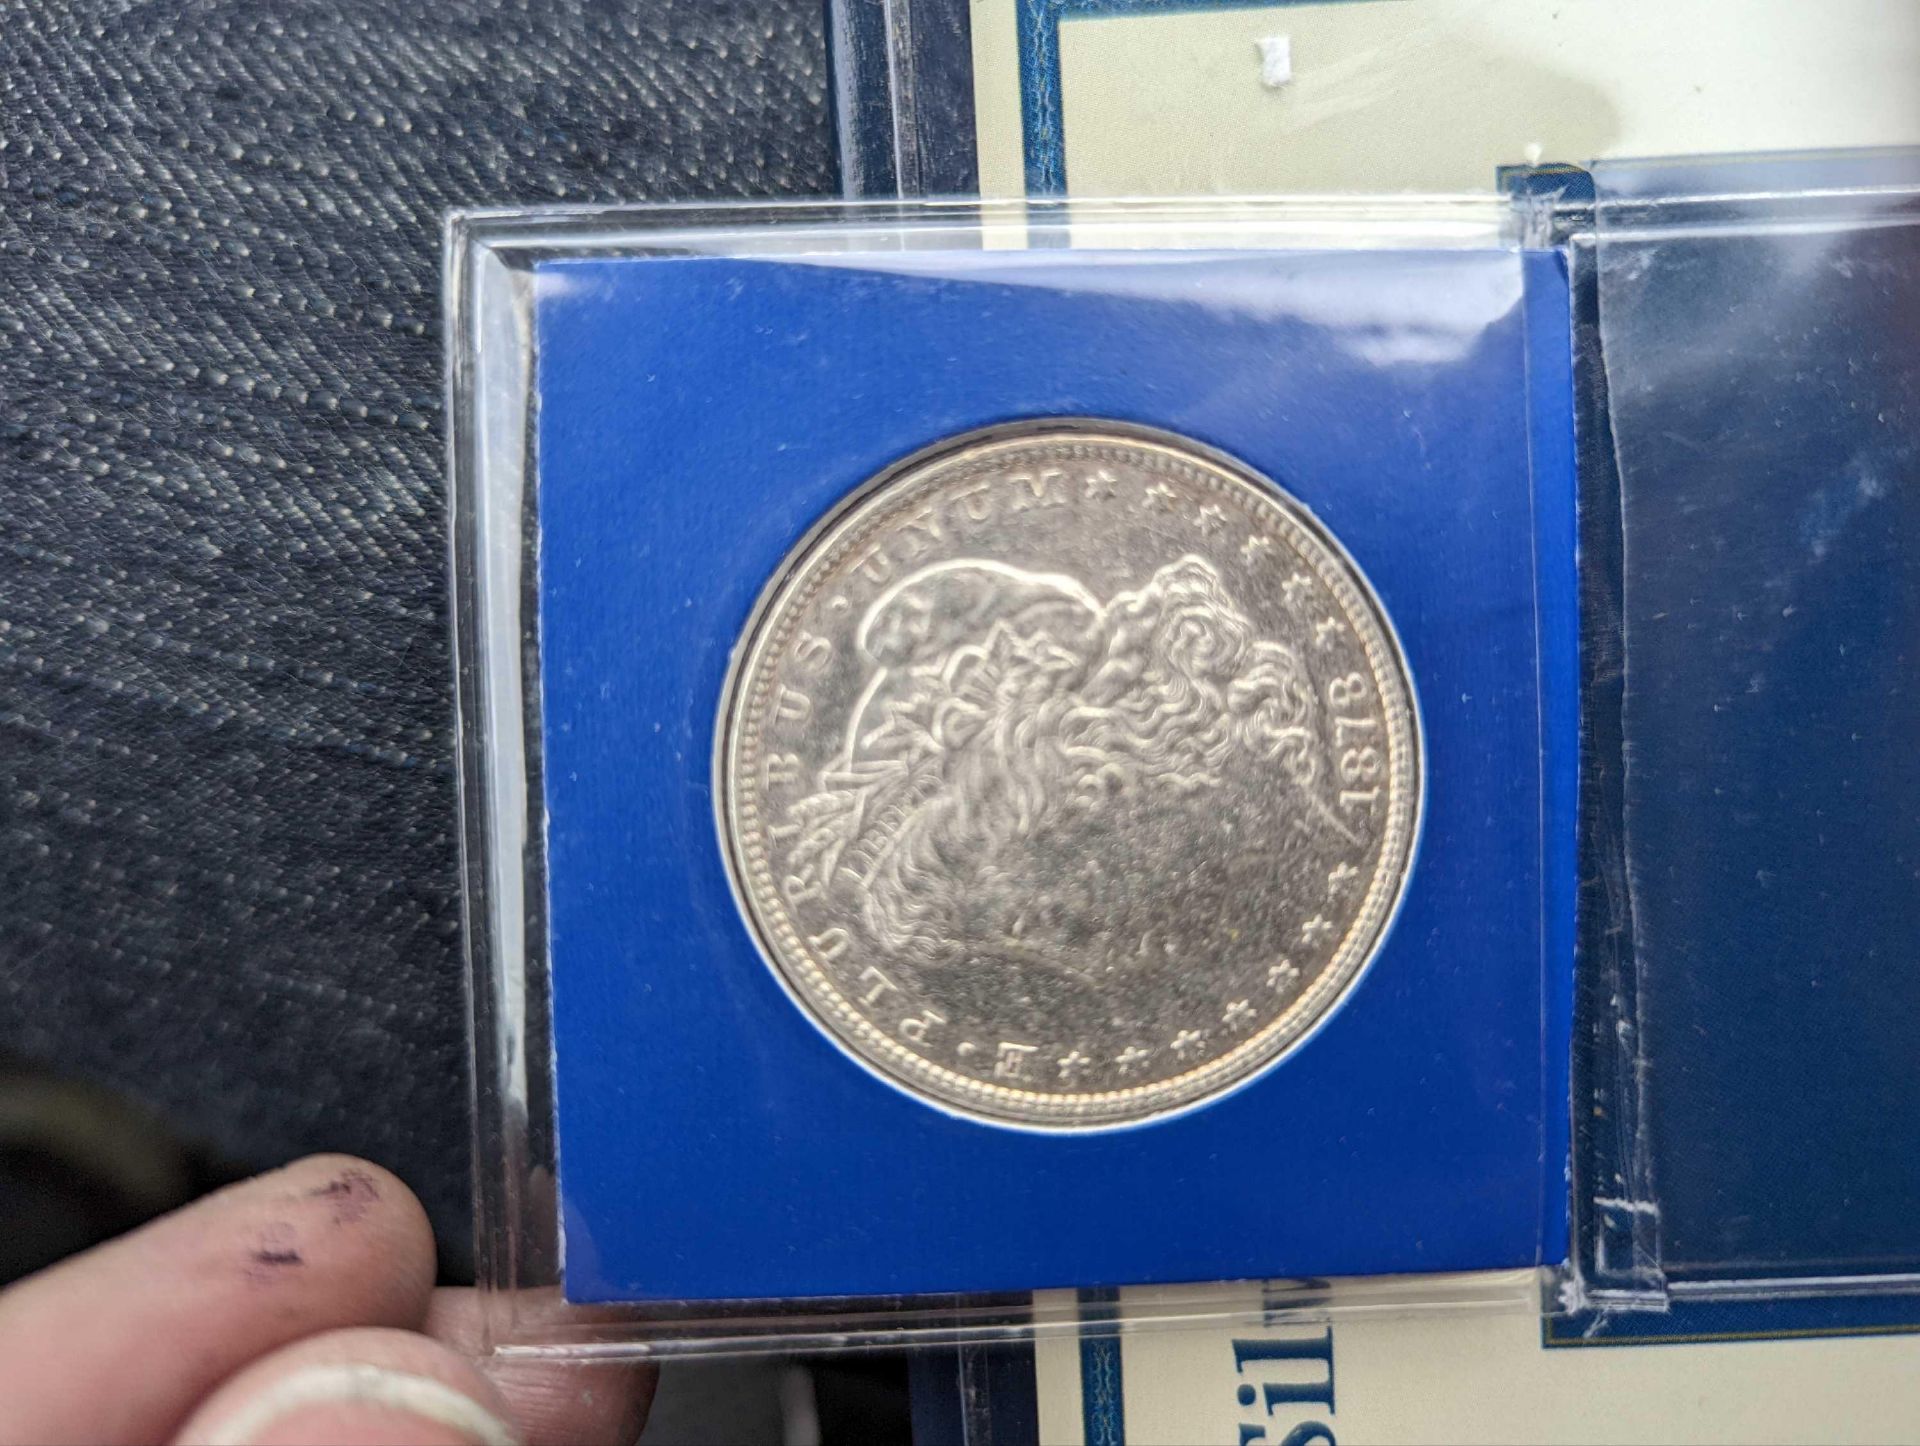 1878 Morgan dollar collection